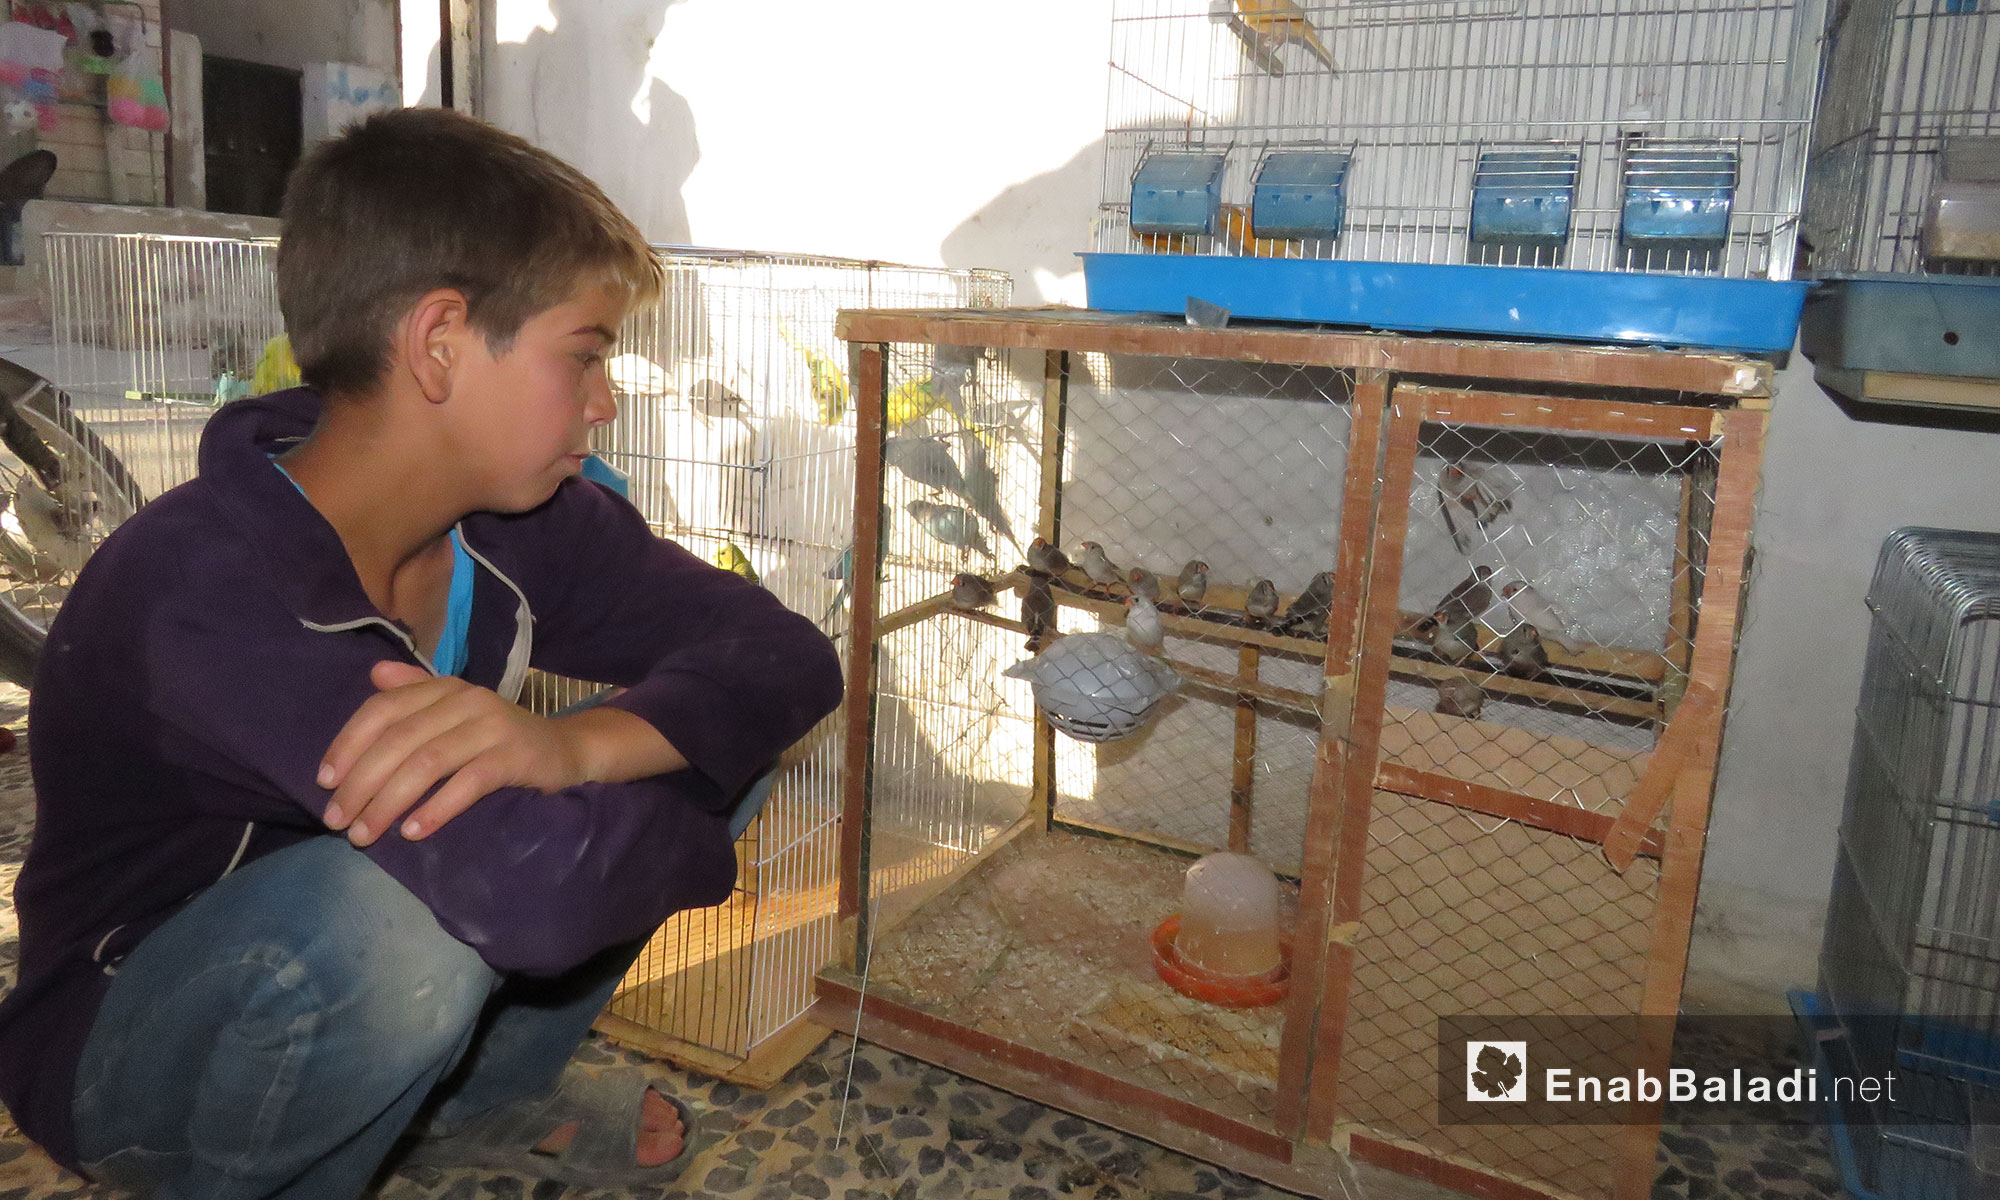 محل لبيع العصافير وجميع مستلزمات تربيتها في بلدية معرتحرمة بريف إدلب الجنوبي - 17 حزيران 2017 (عنب بلدي)